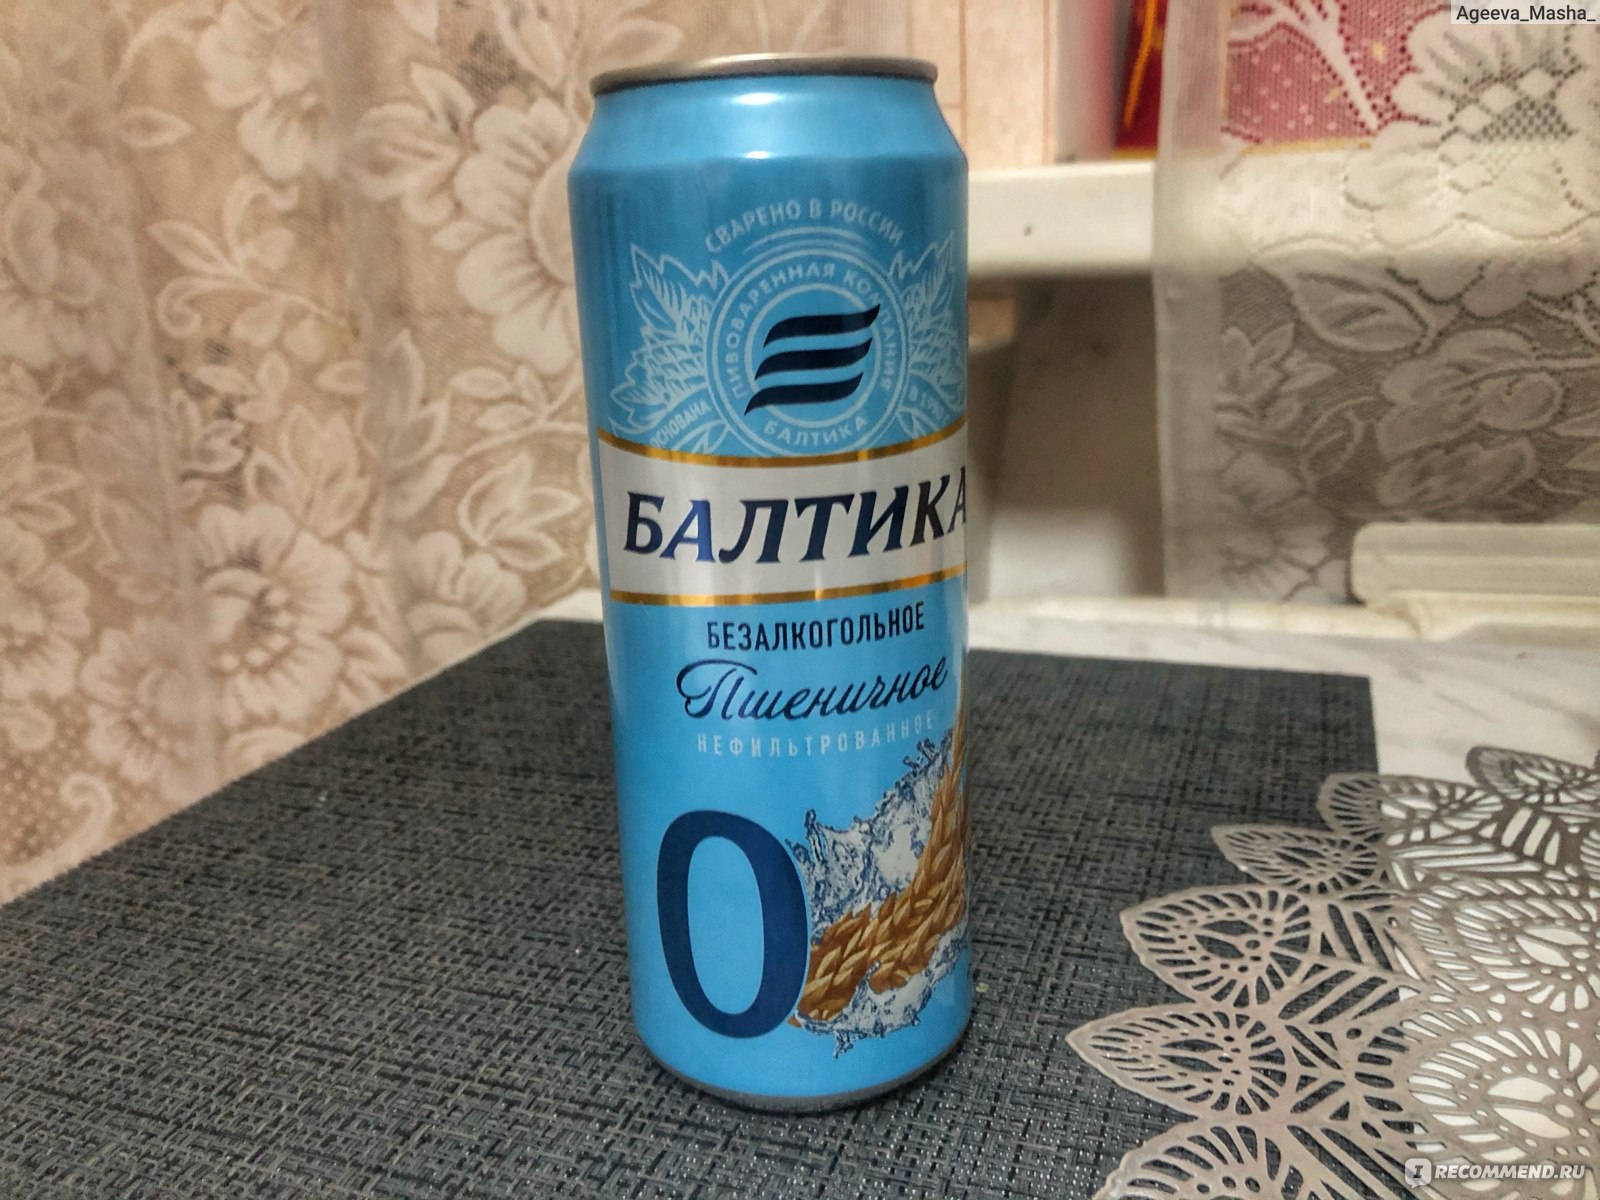 Балтика пшеничное безалкогольное